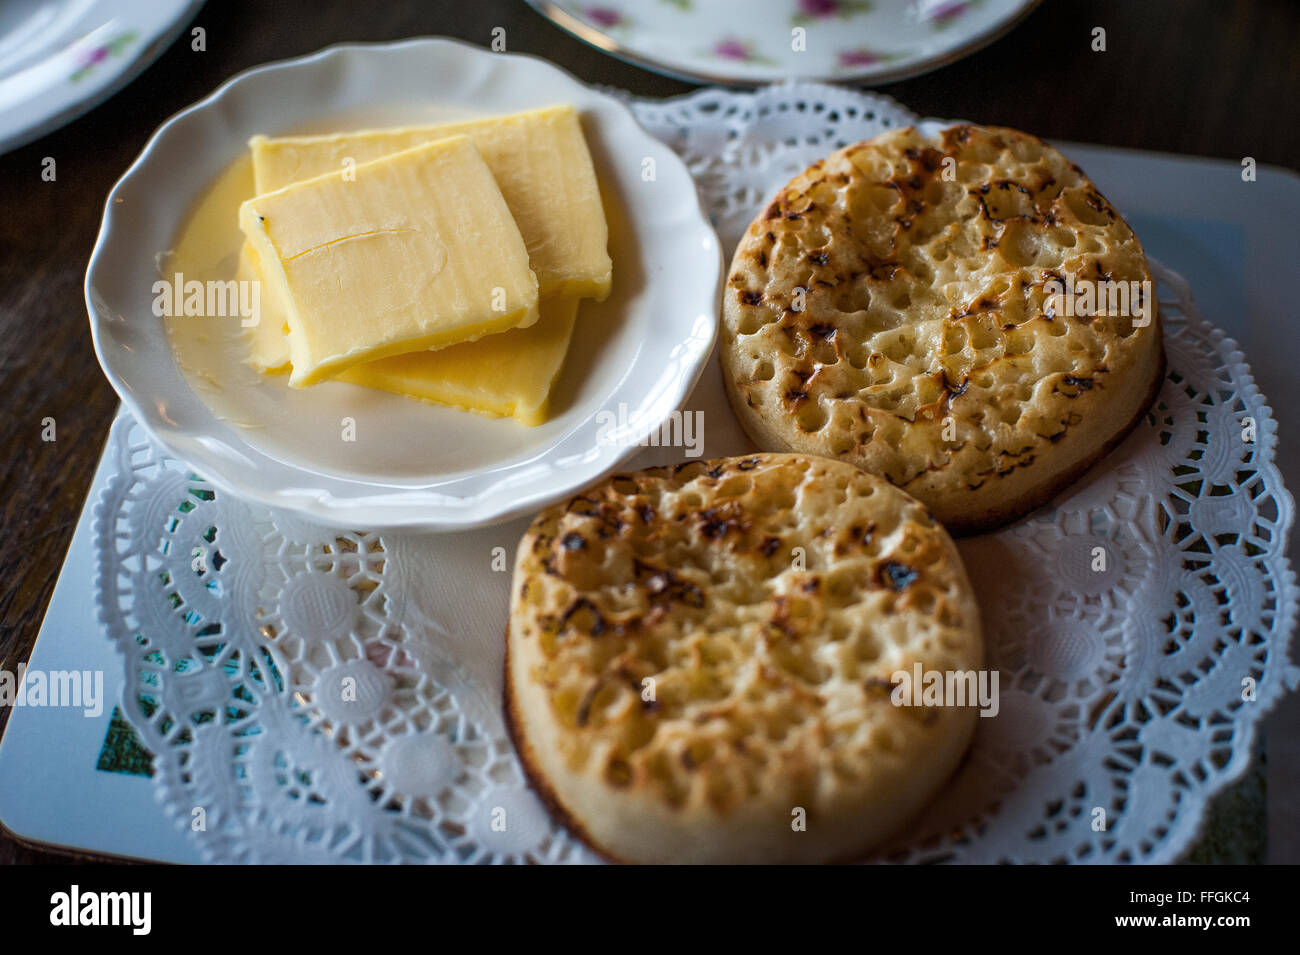 Mañana crumpets y mantequilla en Inglaterra Foto de stock